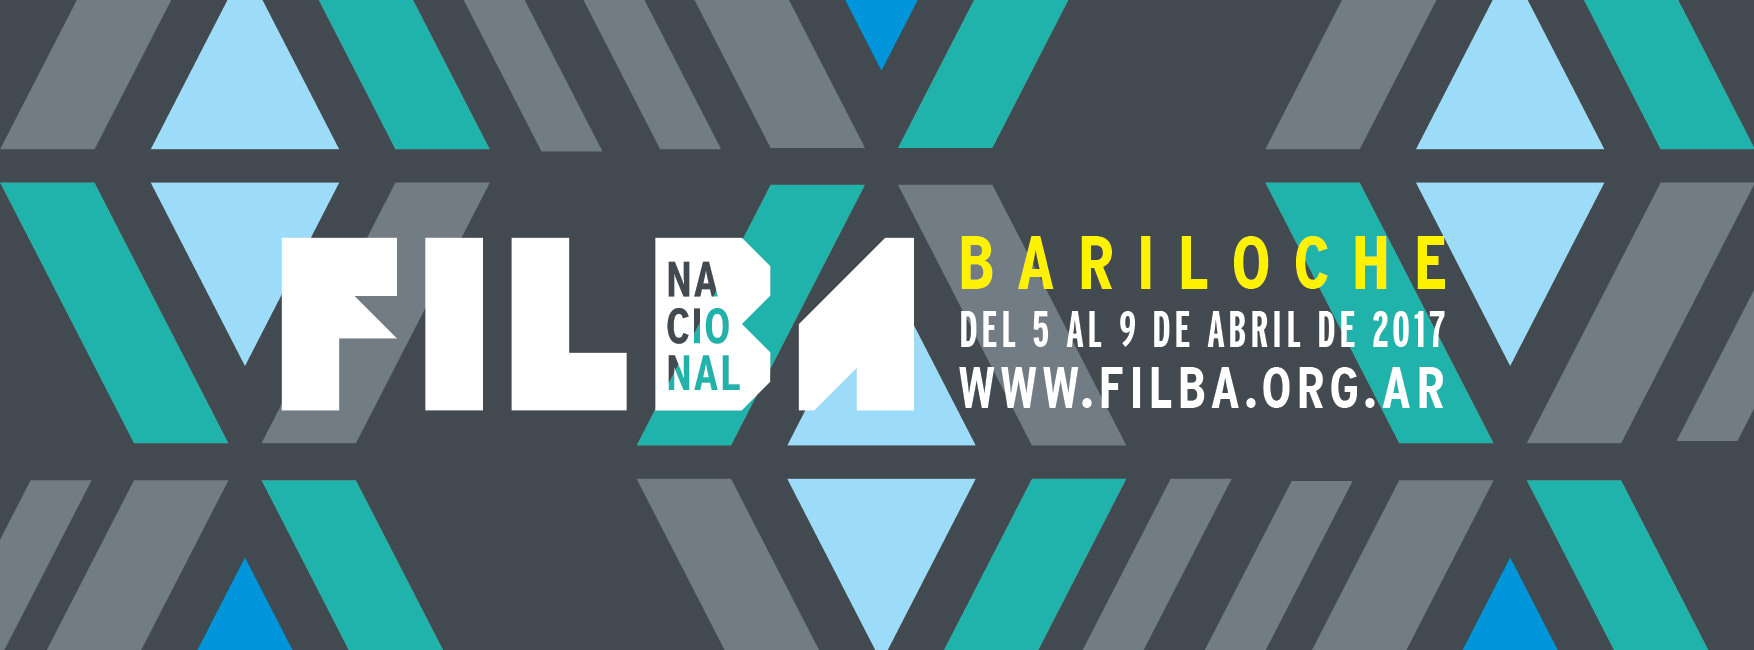 Filba Nacional Bariloche 2017